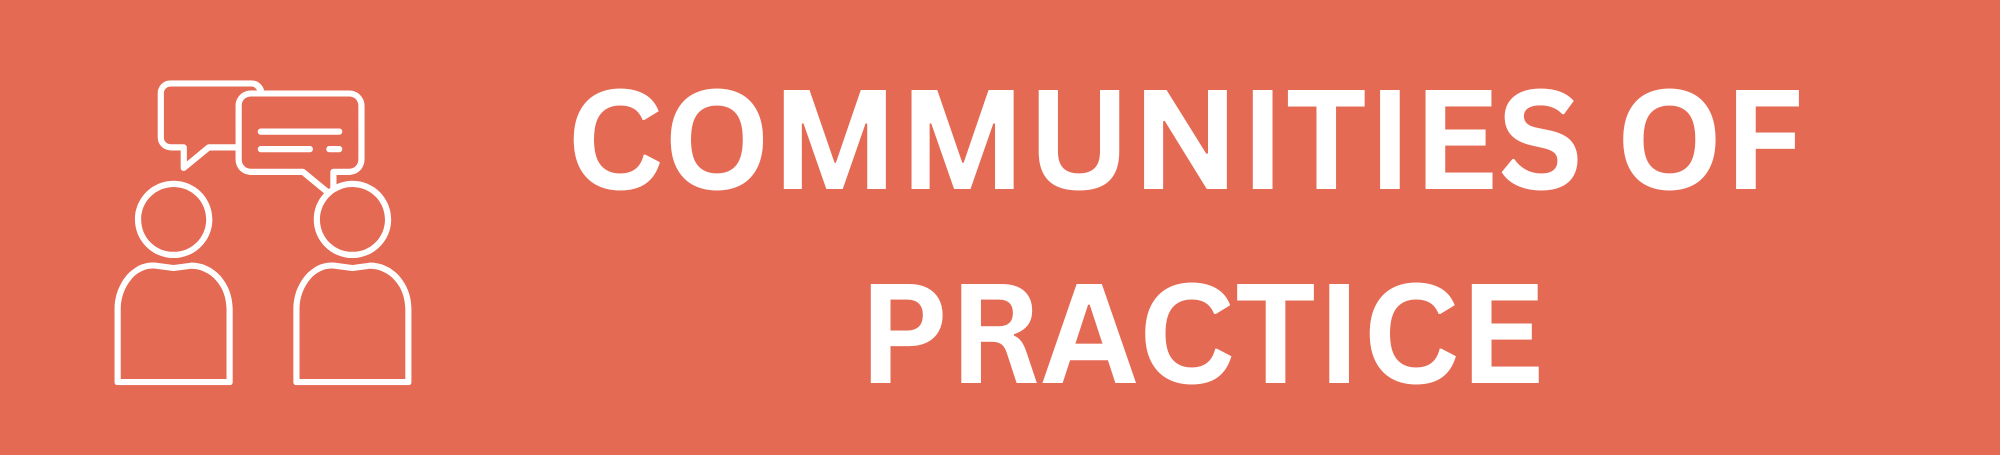 communities-of-practice.png